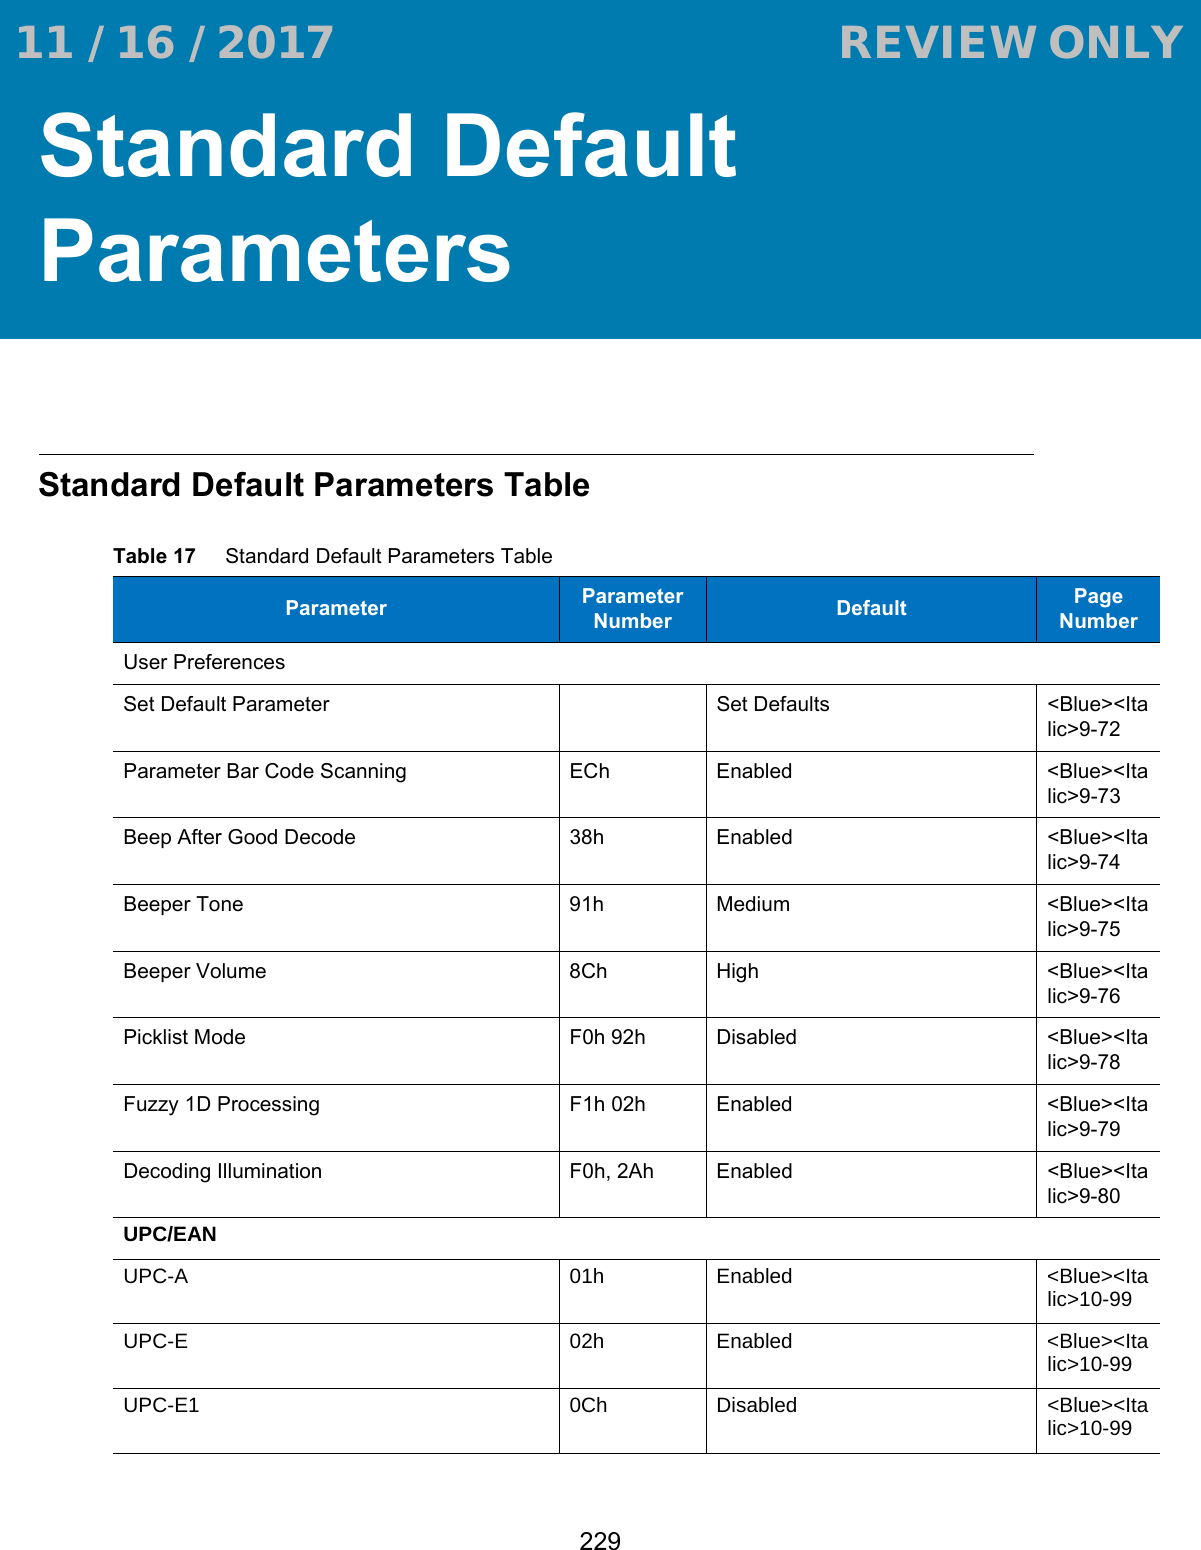 229Standard Default ParametersStandard Default Parameters TableTable 17     Standard Default Parameters TableParameter Parameter Number Default Page NumberUser PreferencesSet Default Parameter Set Defaults &lt;Blue&gt;&lt;Italic&gt;9-72Parameter Bar Code Scanning ECh Enabled &lt;Blue&gt;&lt;Italic&gt;9-73Beep After Good Decode 38h Enabled &lt;Blue&gt;&lt;Italic&gt;9-74Beeper Tone 91h Medium &lt;Blue&gt;&lt;Italic&gt;9-75Beeper Volume 8Ch High &lt;Blue&gt;&lt;Italic&gt;9-76Picklist Mode F0h 92h Disabled  &lt;Blue&gt;&lt;Italic&gt;9-78Fuzzy 1D Processing F1h 02h Enabled &lt;Blue&gt;&lt;Italic&gt;9-79Decoding Illumination F0h, 2Ah Enabled &lt;Blue&gt;&lt;Italic&gt;9-80UPC/EANUPC-A 01h Enabled &lt;Blue&gt;&lt;Italic&gt;10-99UPC-E 02h Enabled &lt;Blue&gt;&lt;Italic&gt;10-99UPC-E1 0Ch Disabled &lt;Blue&gt;&lt;Italic&gt;10-99 11 / 16 / 2017                                  REVIEW ONLY                             REVIEW ONLY - REVIEW ONLY - REVIEW ONLY